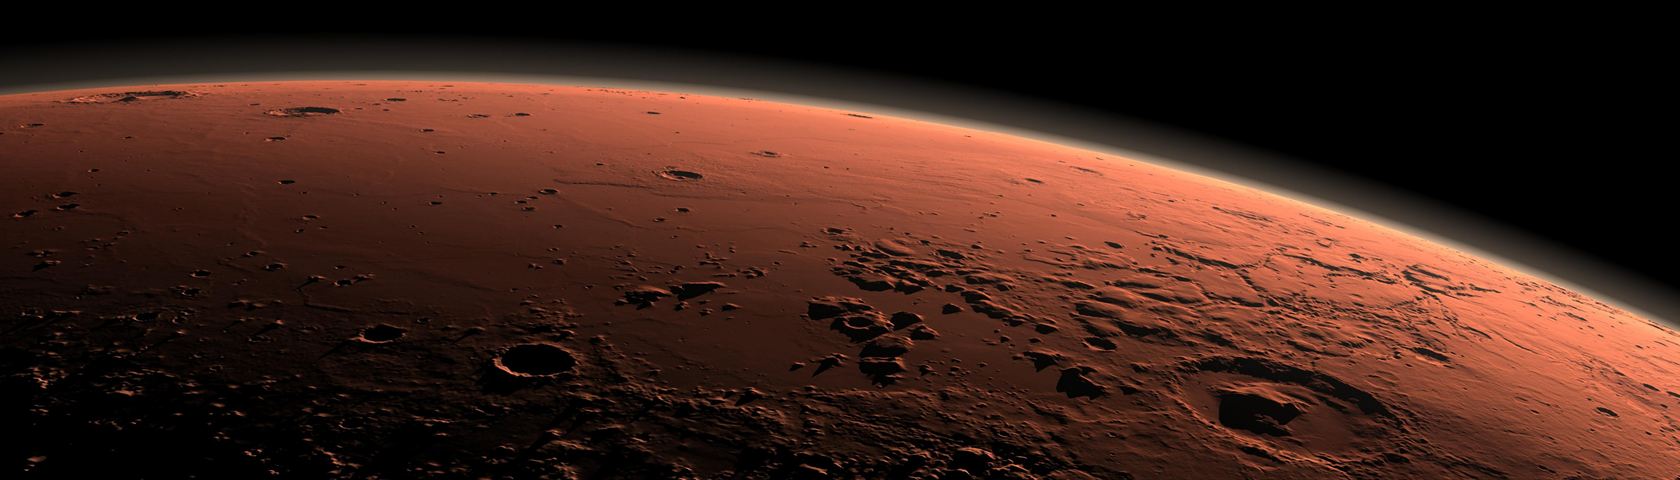 Mars at Sunrise